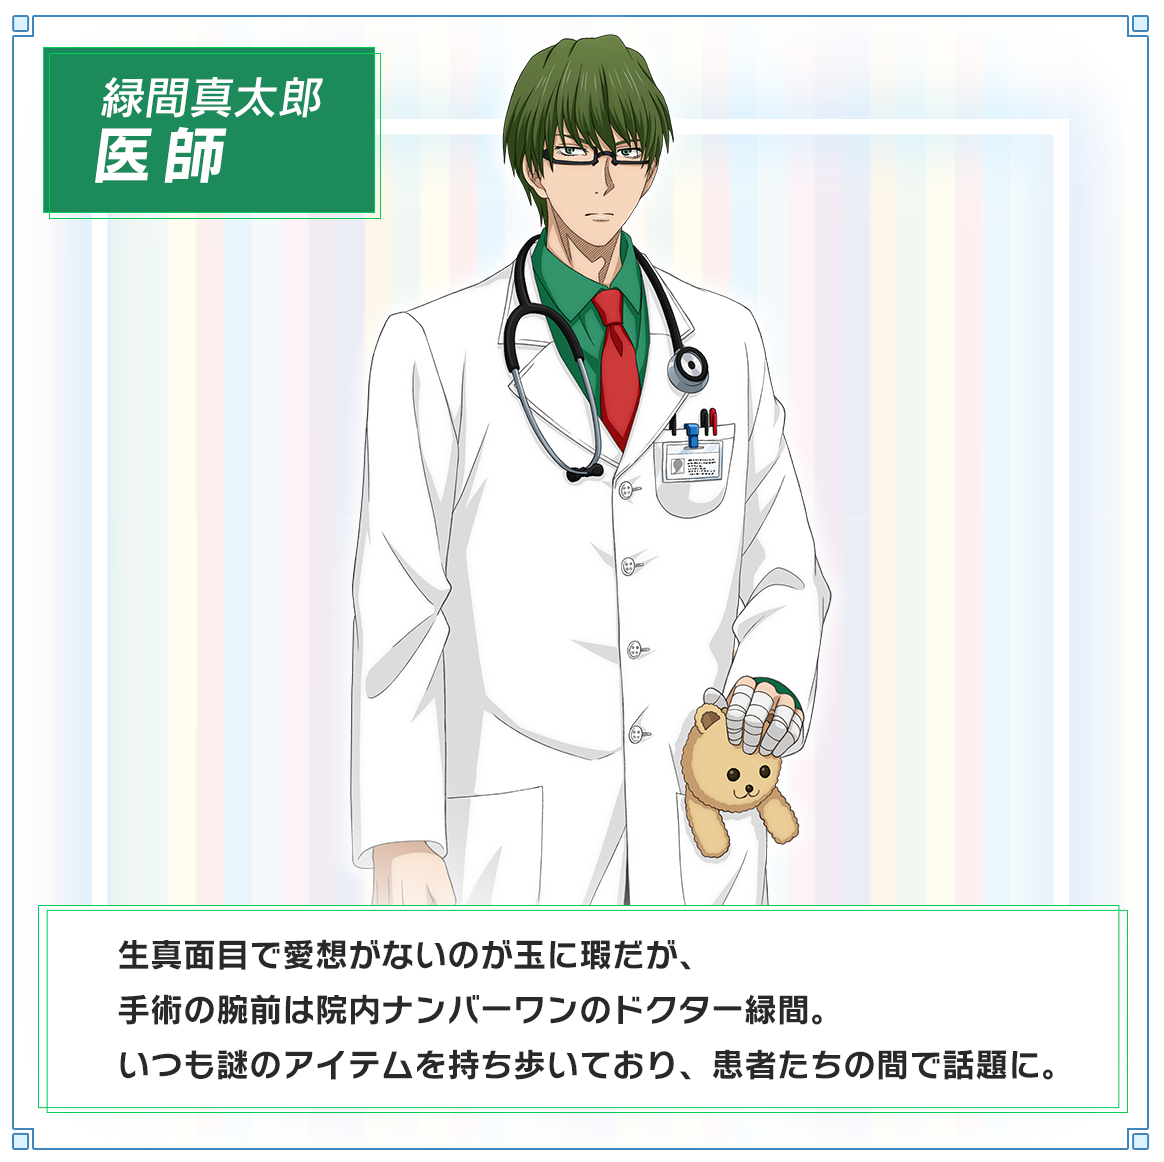 キャラクター紹介：緑間真太郎/医師。生真面目で愛想がないのが玉に瑕だが、手術の腕前は院内ナンバーワンのドクター緑間。いつも謎のアイテムを持ち歩いており、患者たちの間で話題に。